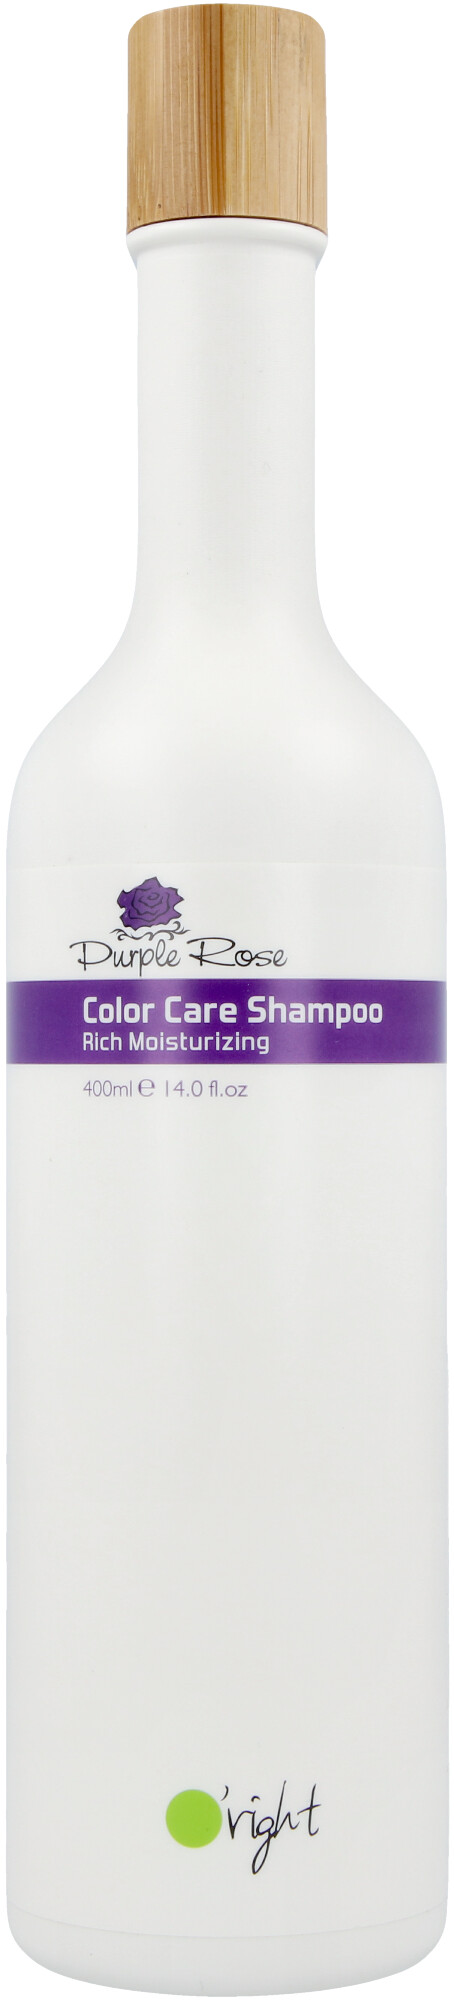 O'right Purple Rose Color Care Shampoo 